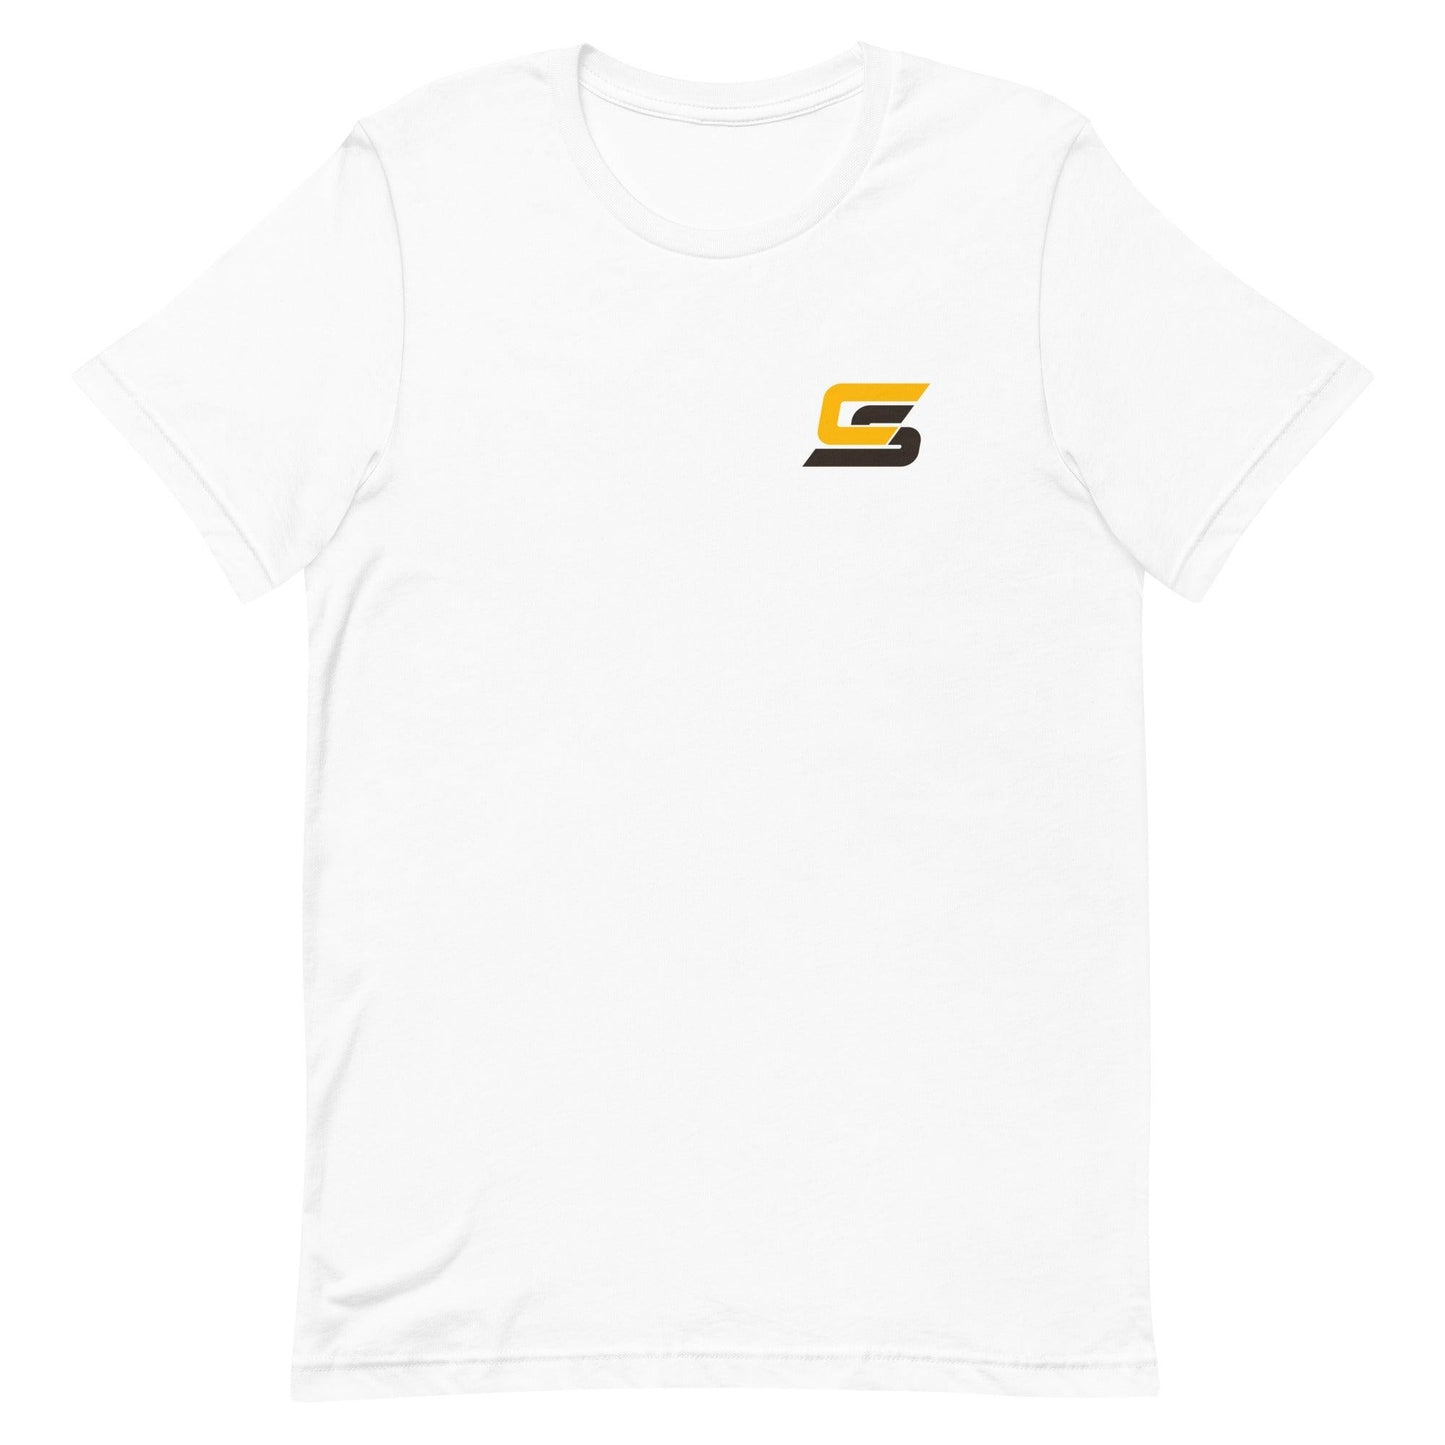 Cory Spangenberg "Elite" t-shirt - Fan Arch